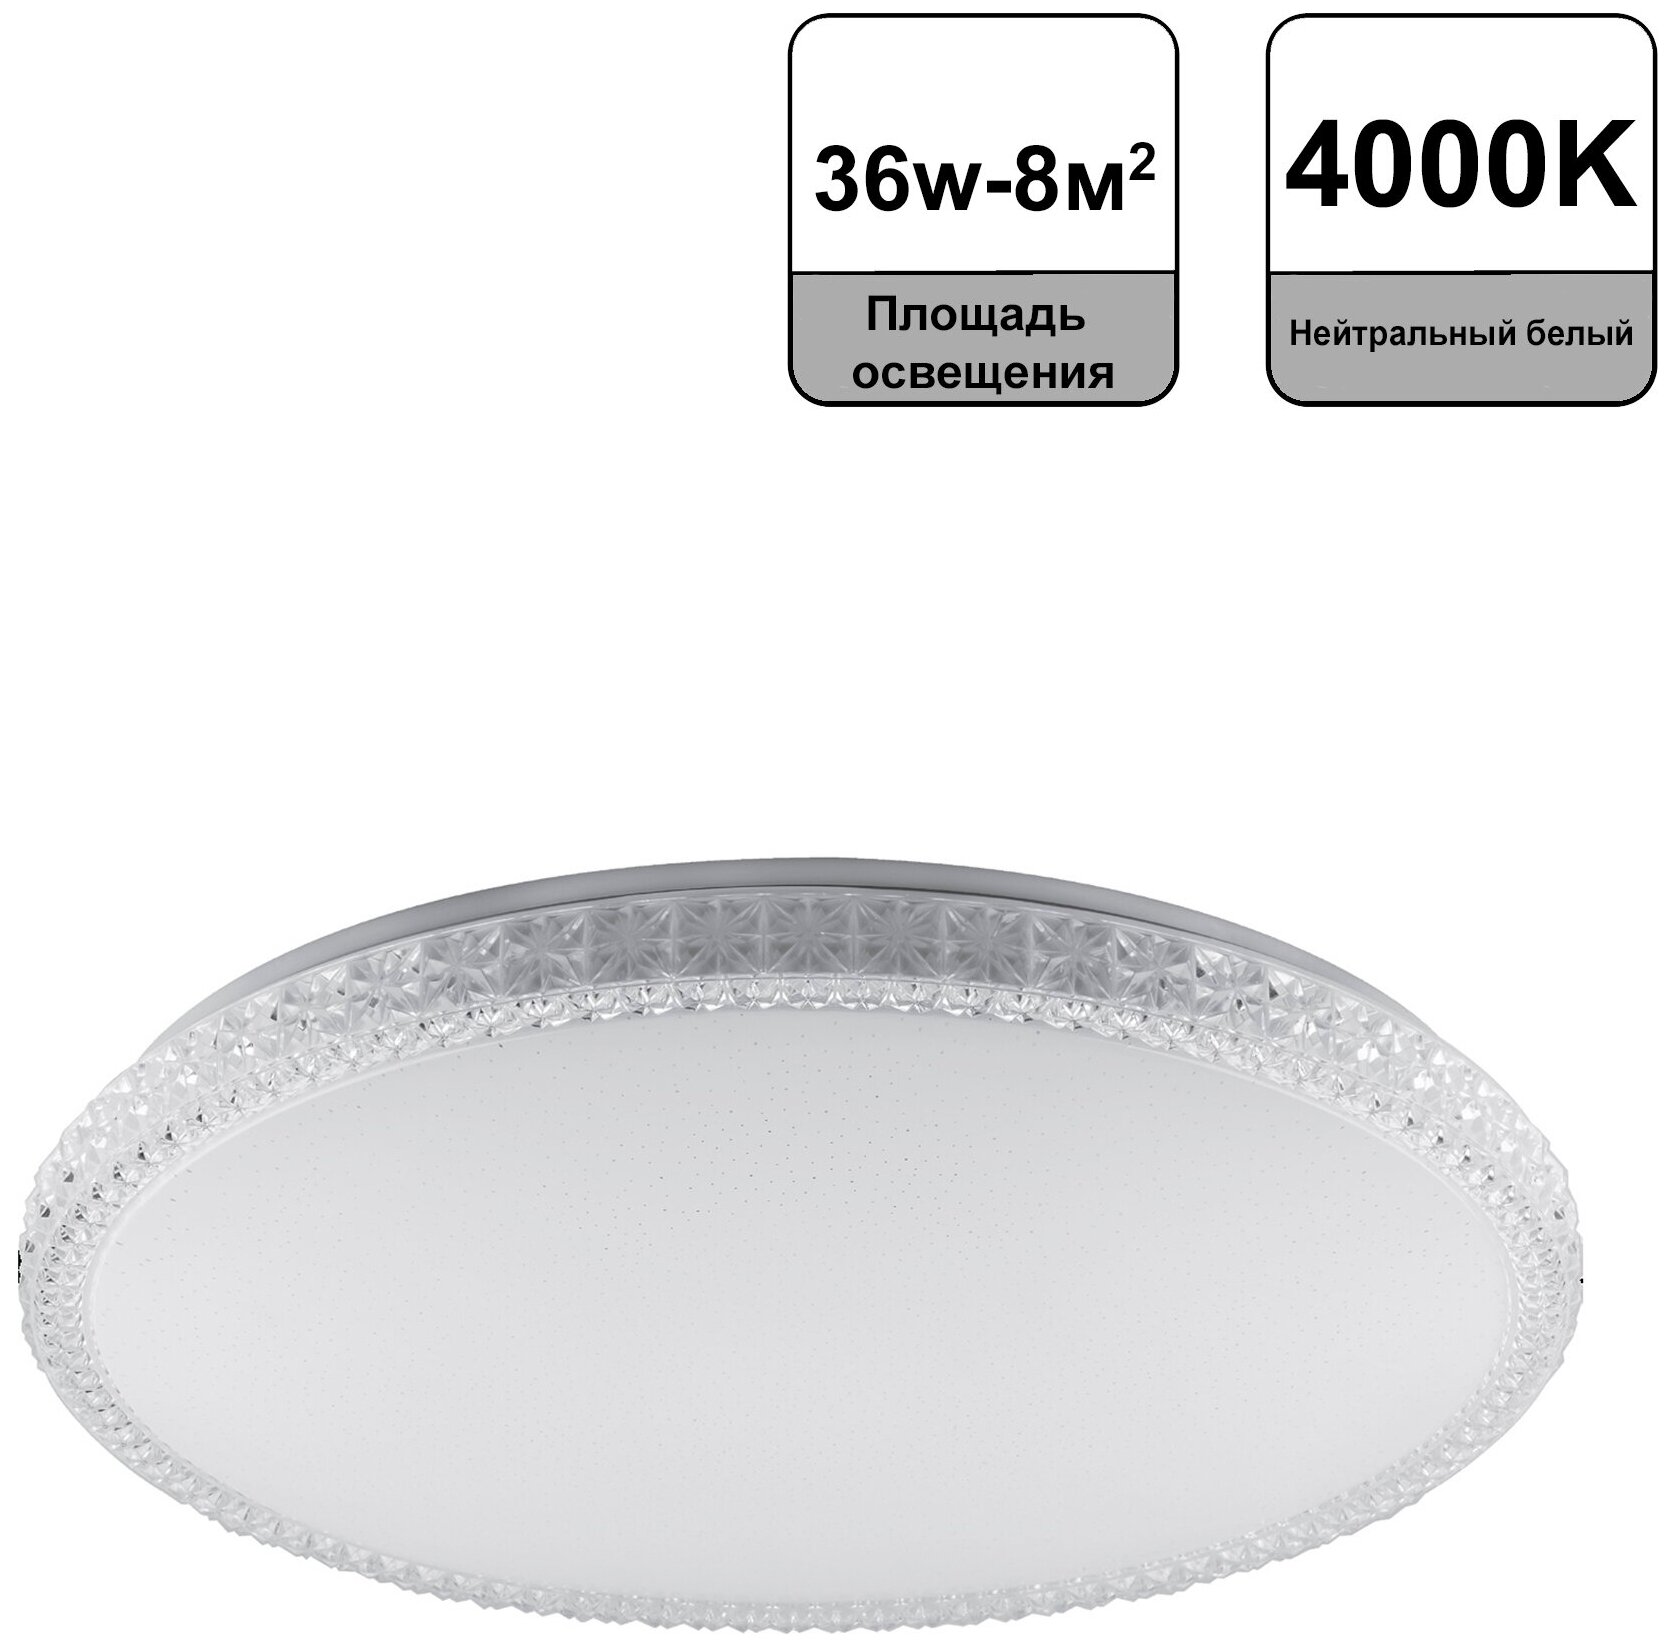 Feron Светодиодный светильник накладной Feron AL5301 тарелка 36W 4000K белый